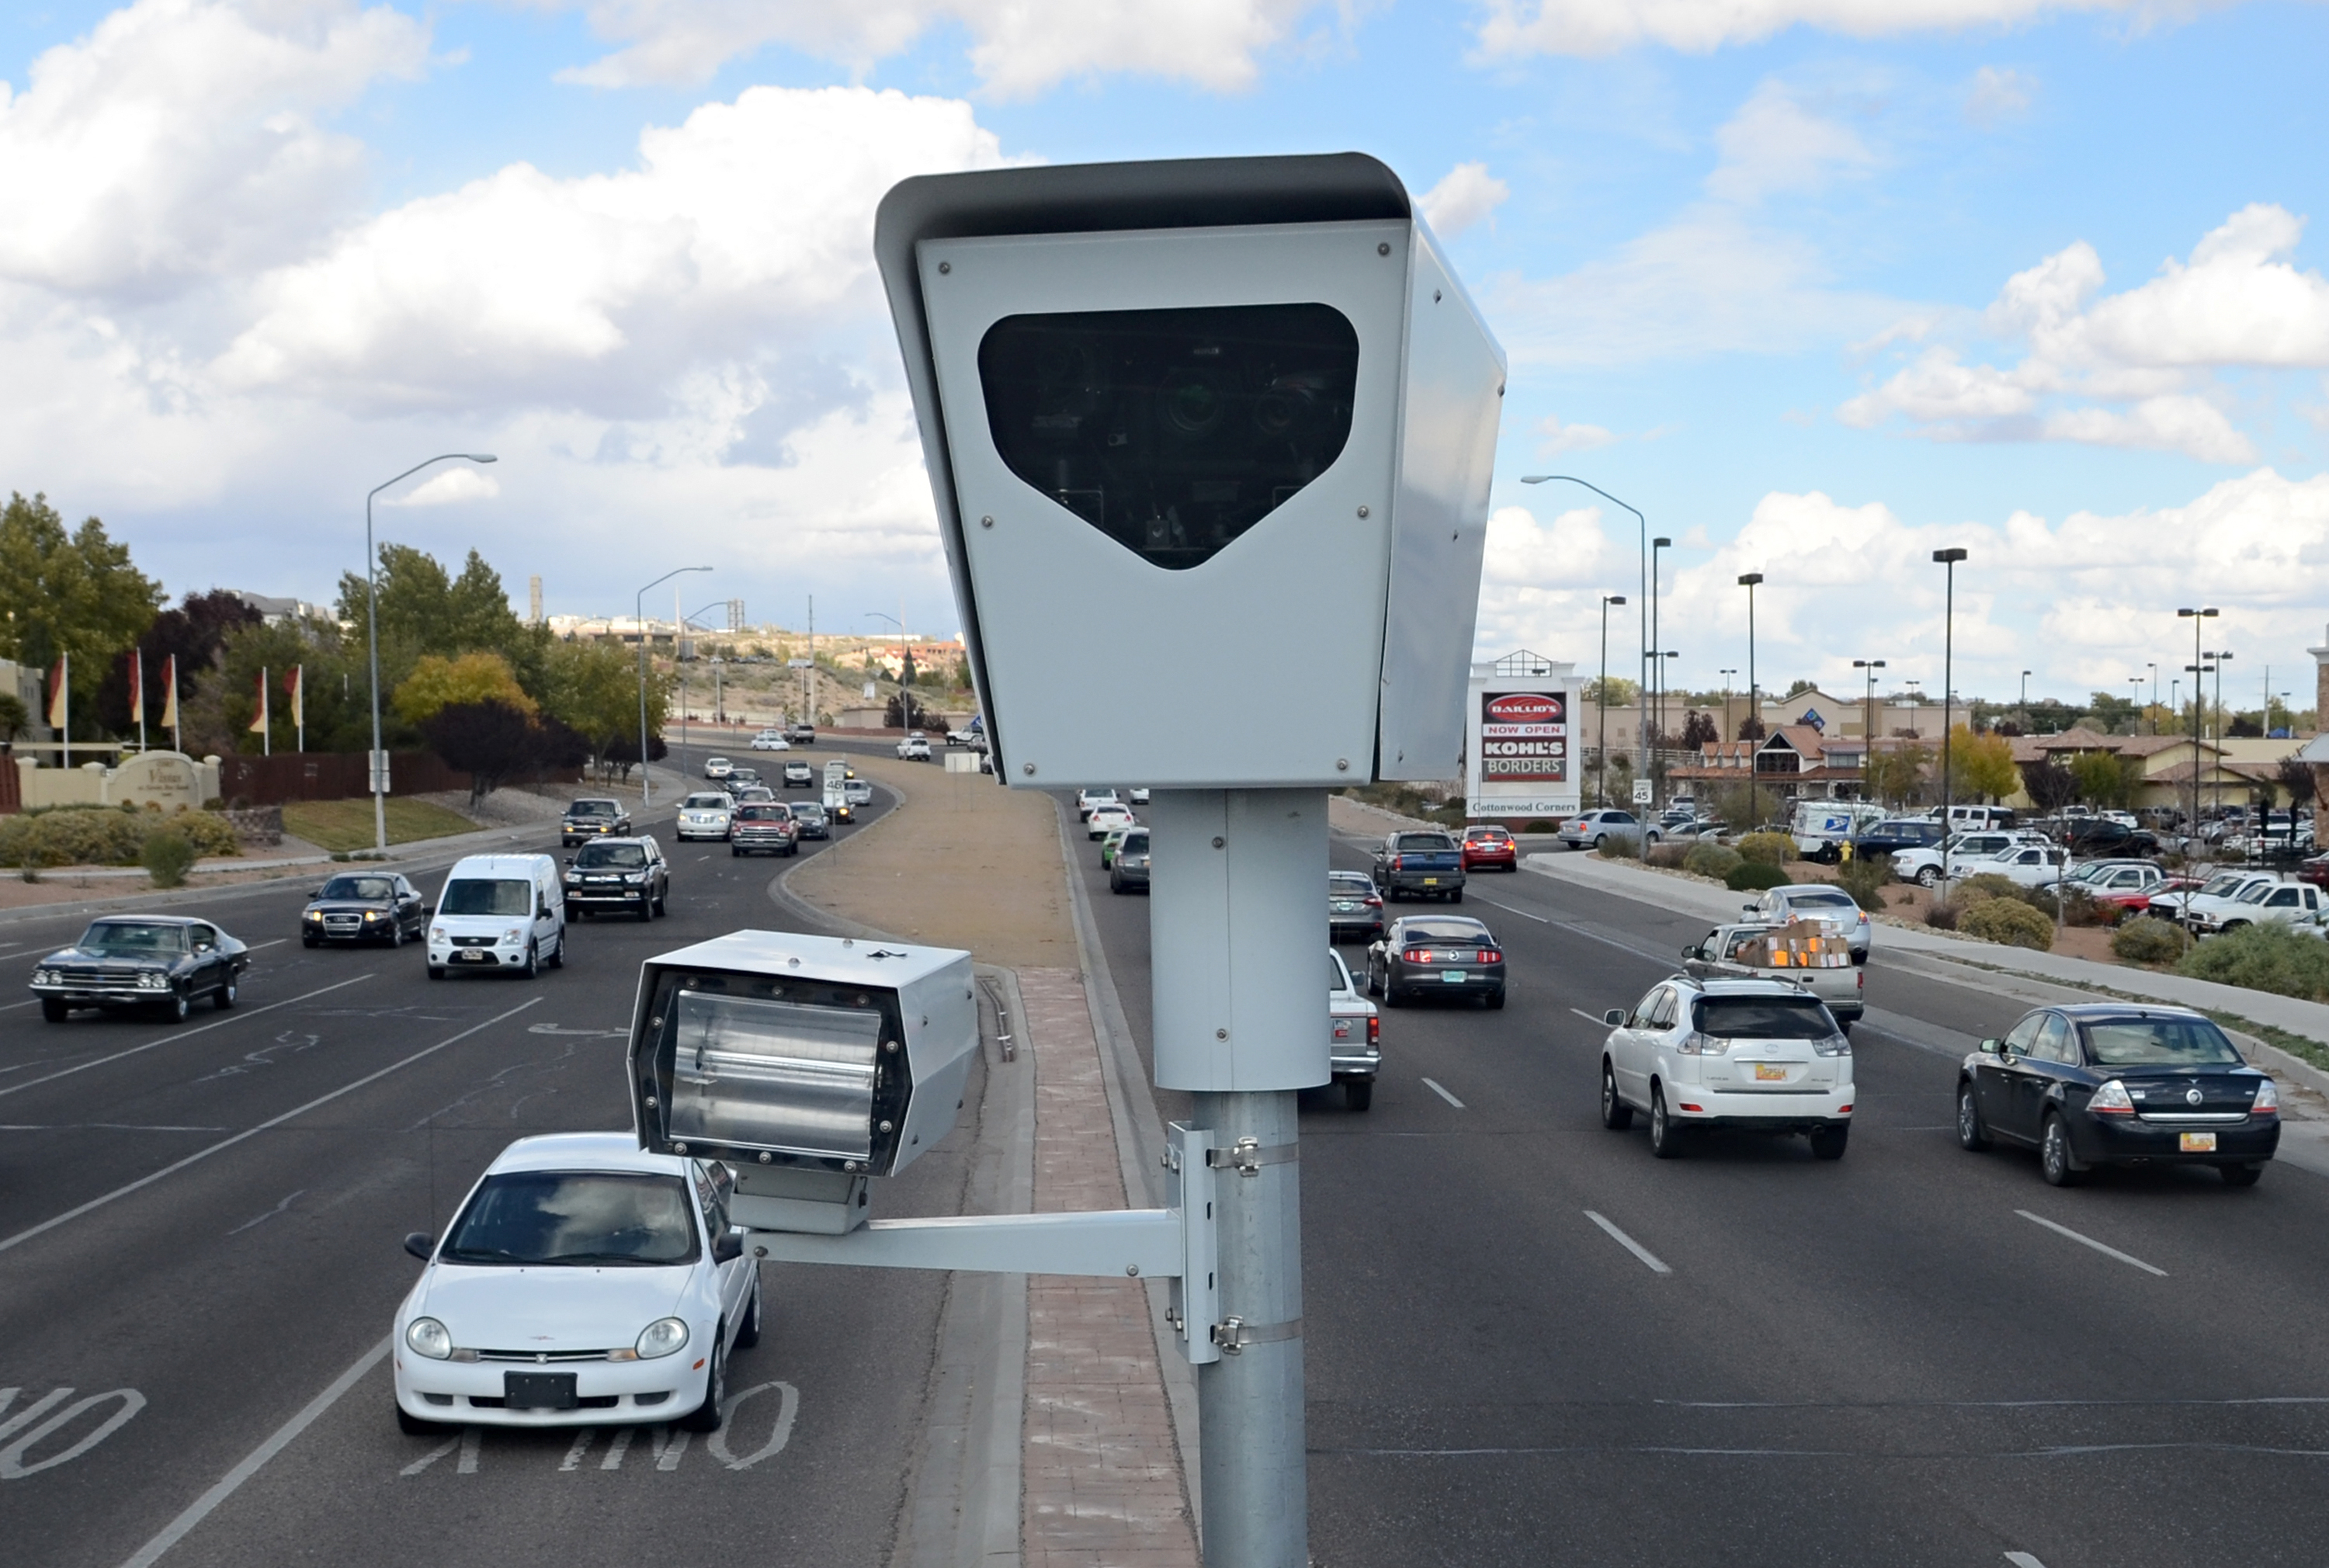 Радар скорости автомобиля. Дорожные камеры видеонаблюдения. Камеры видеонаблюдения на дорогах. Камеры видеофиксации. Камеры фотовидеофиксации.